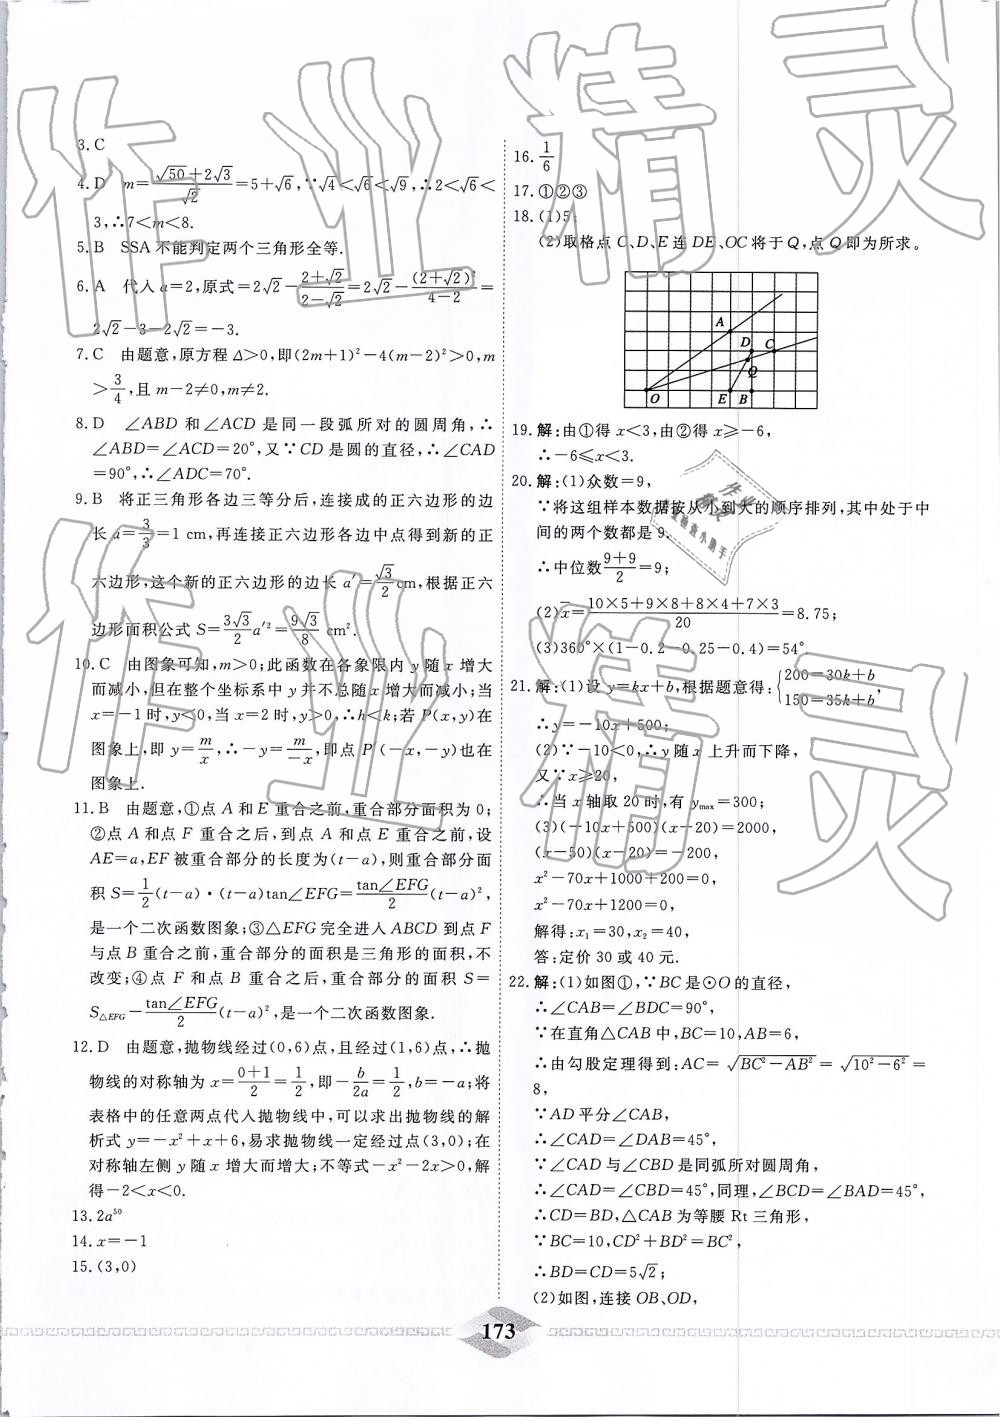 2019年一飞冲天中考模拟试题汇编数学 第13页